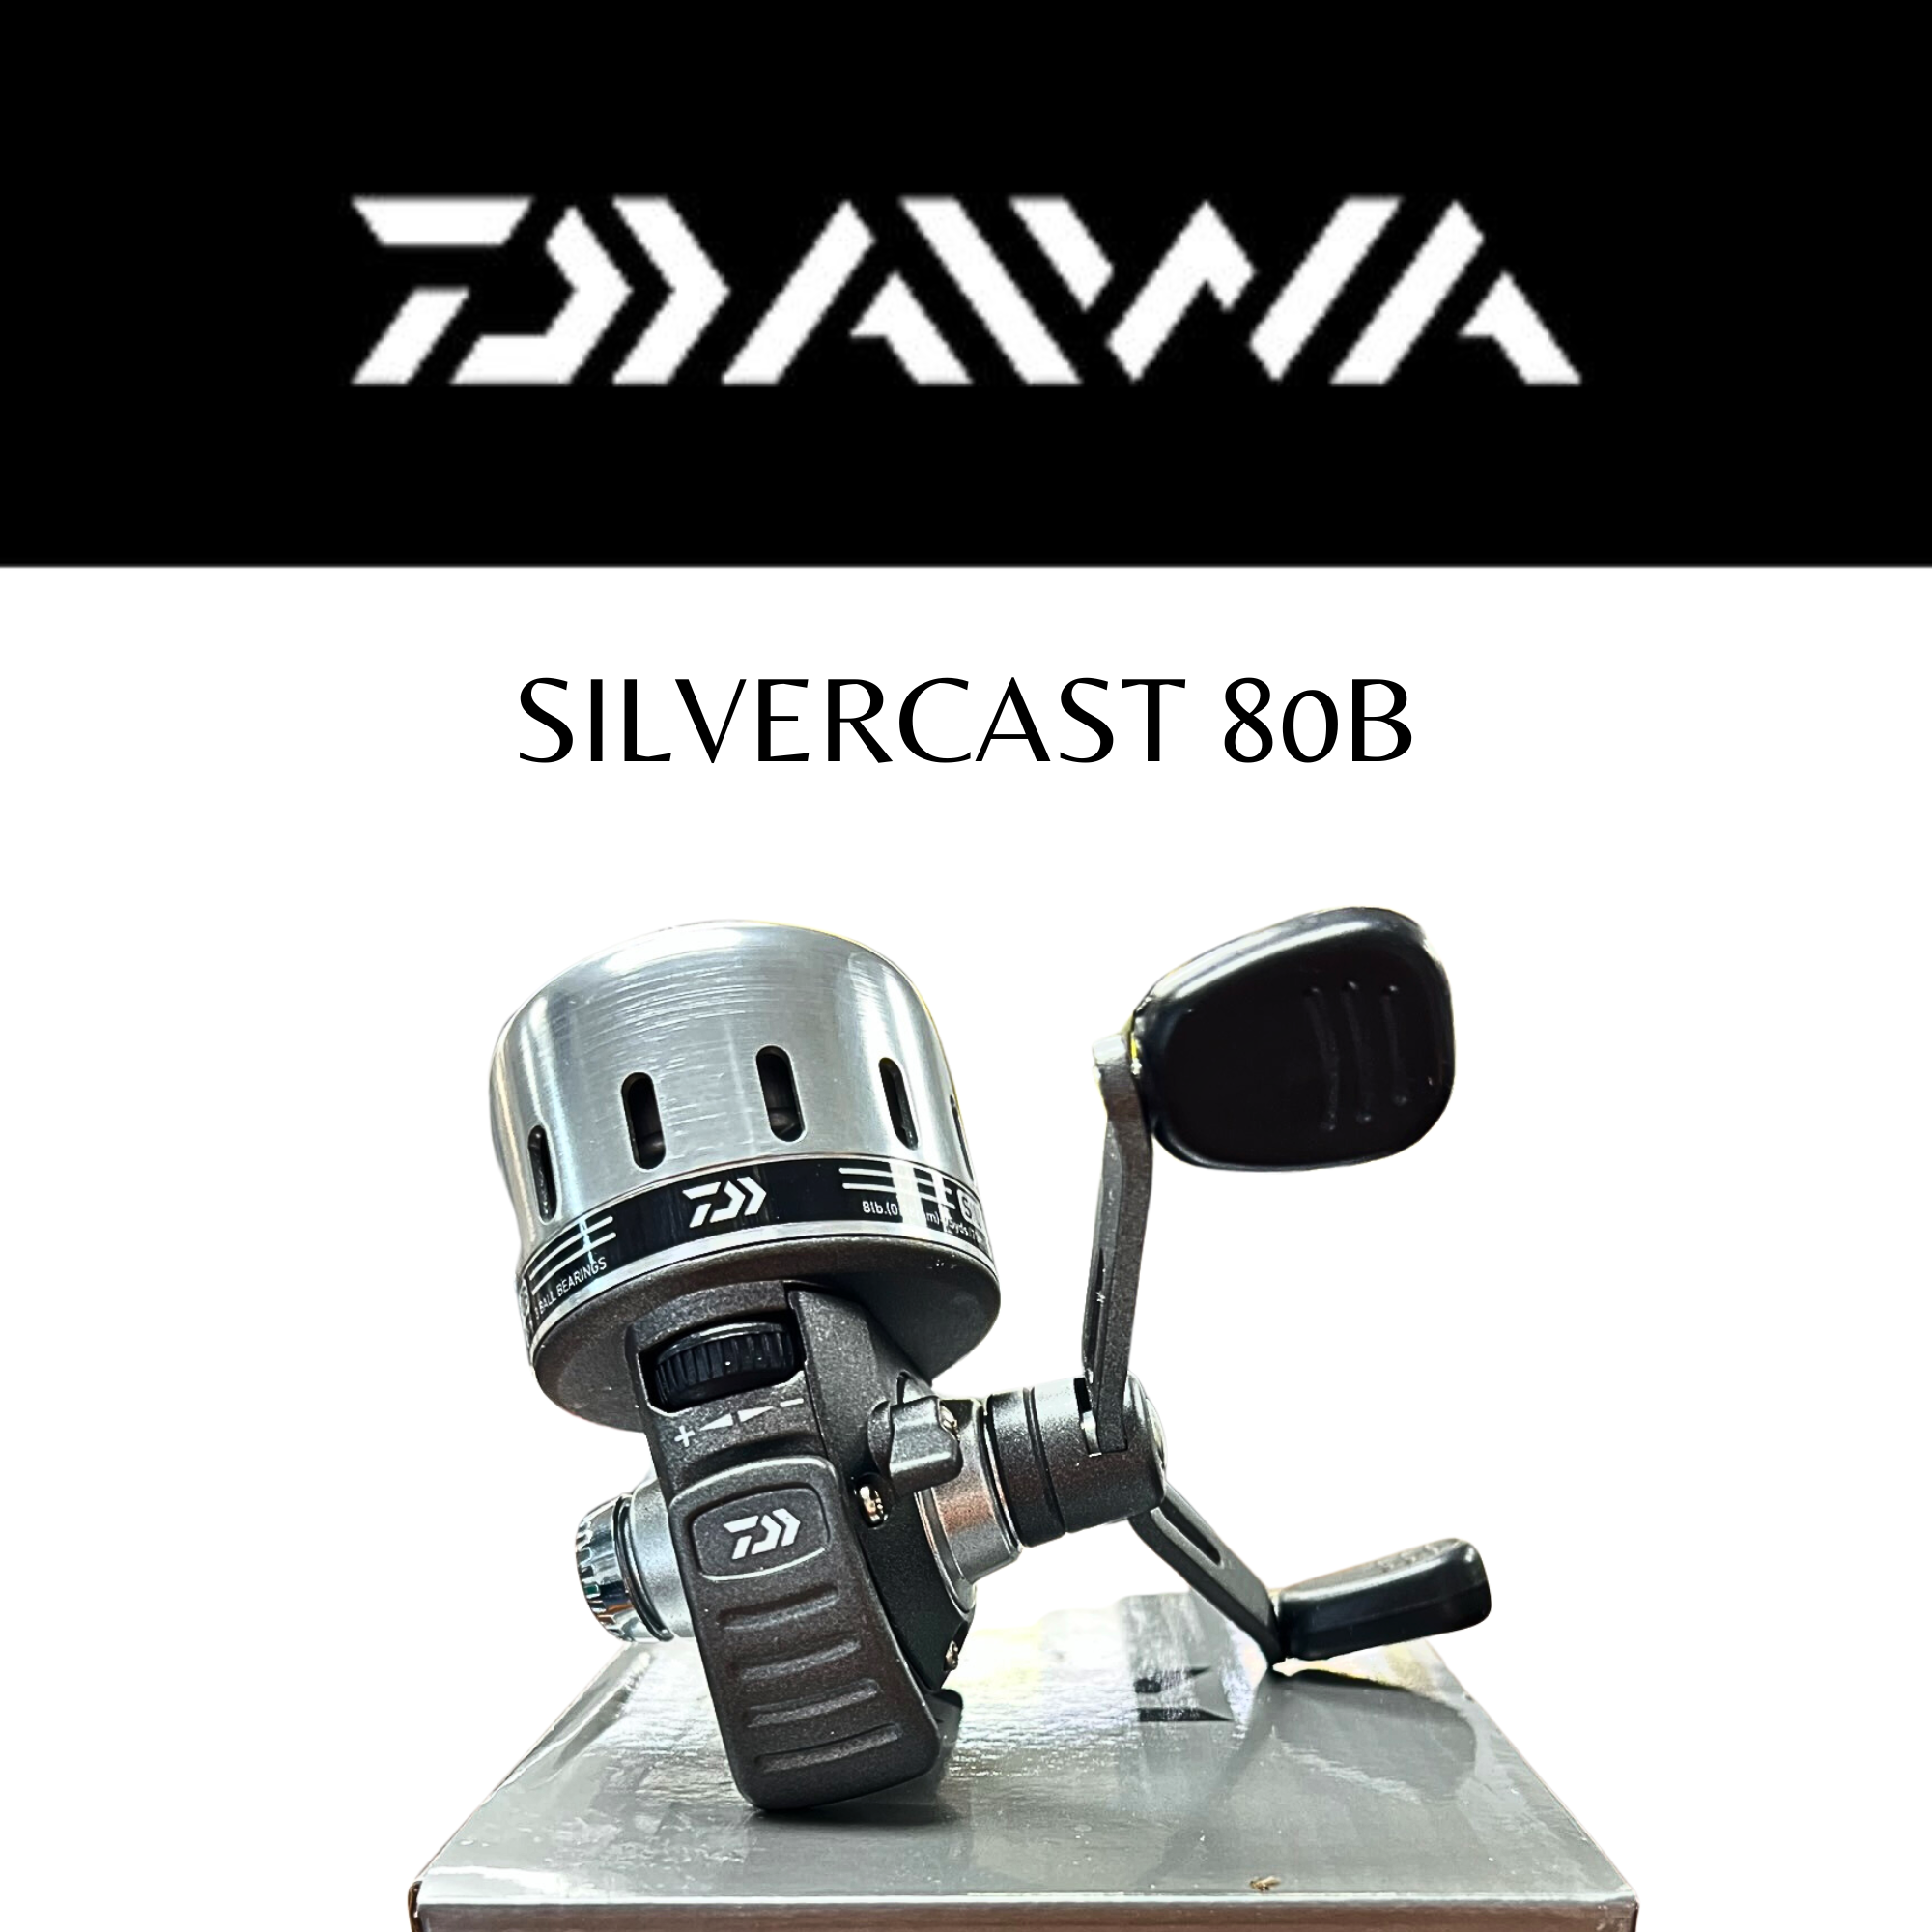 Silvercast 80B Fishing Reel, DAIWA, Spincast Reel, Fishing Store